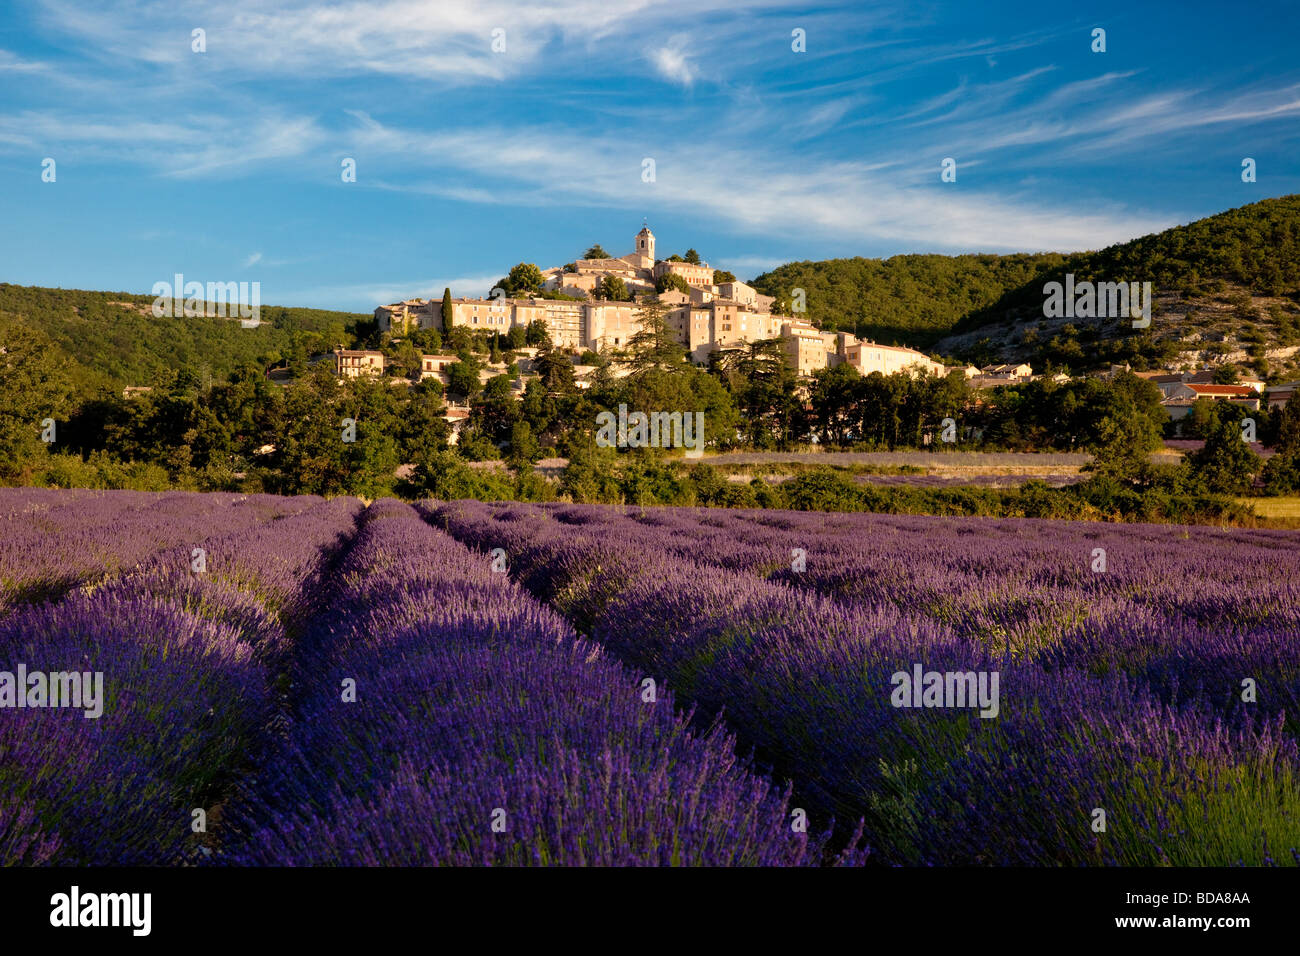 Champ de lavande avec une colline de Banon dans le Vaucluse, Provence France Banque D'Images